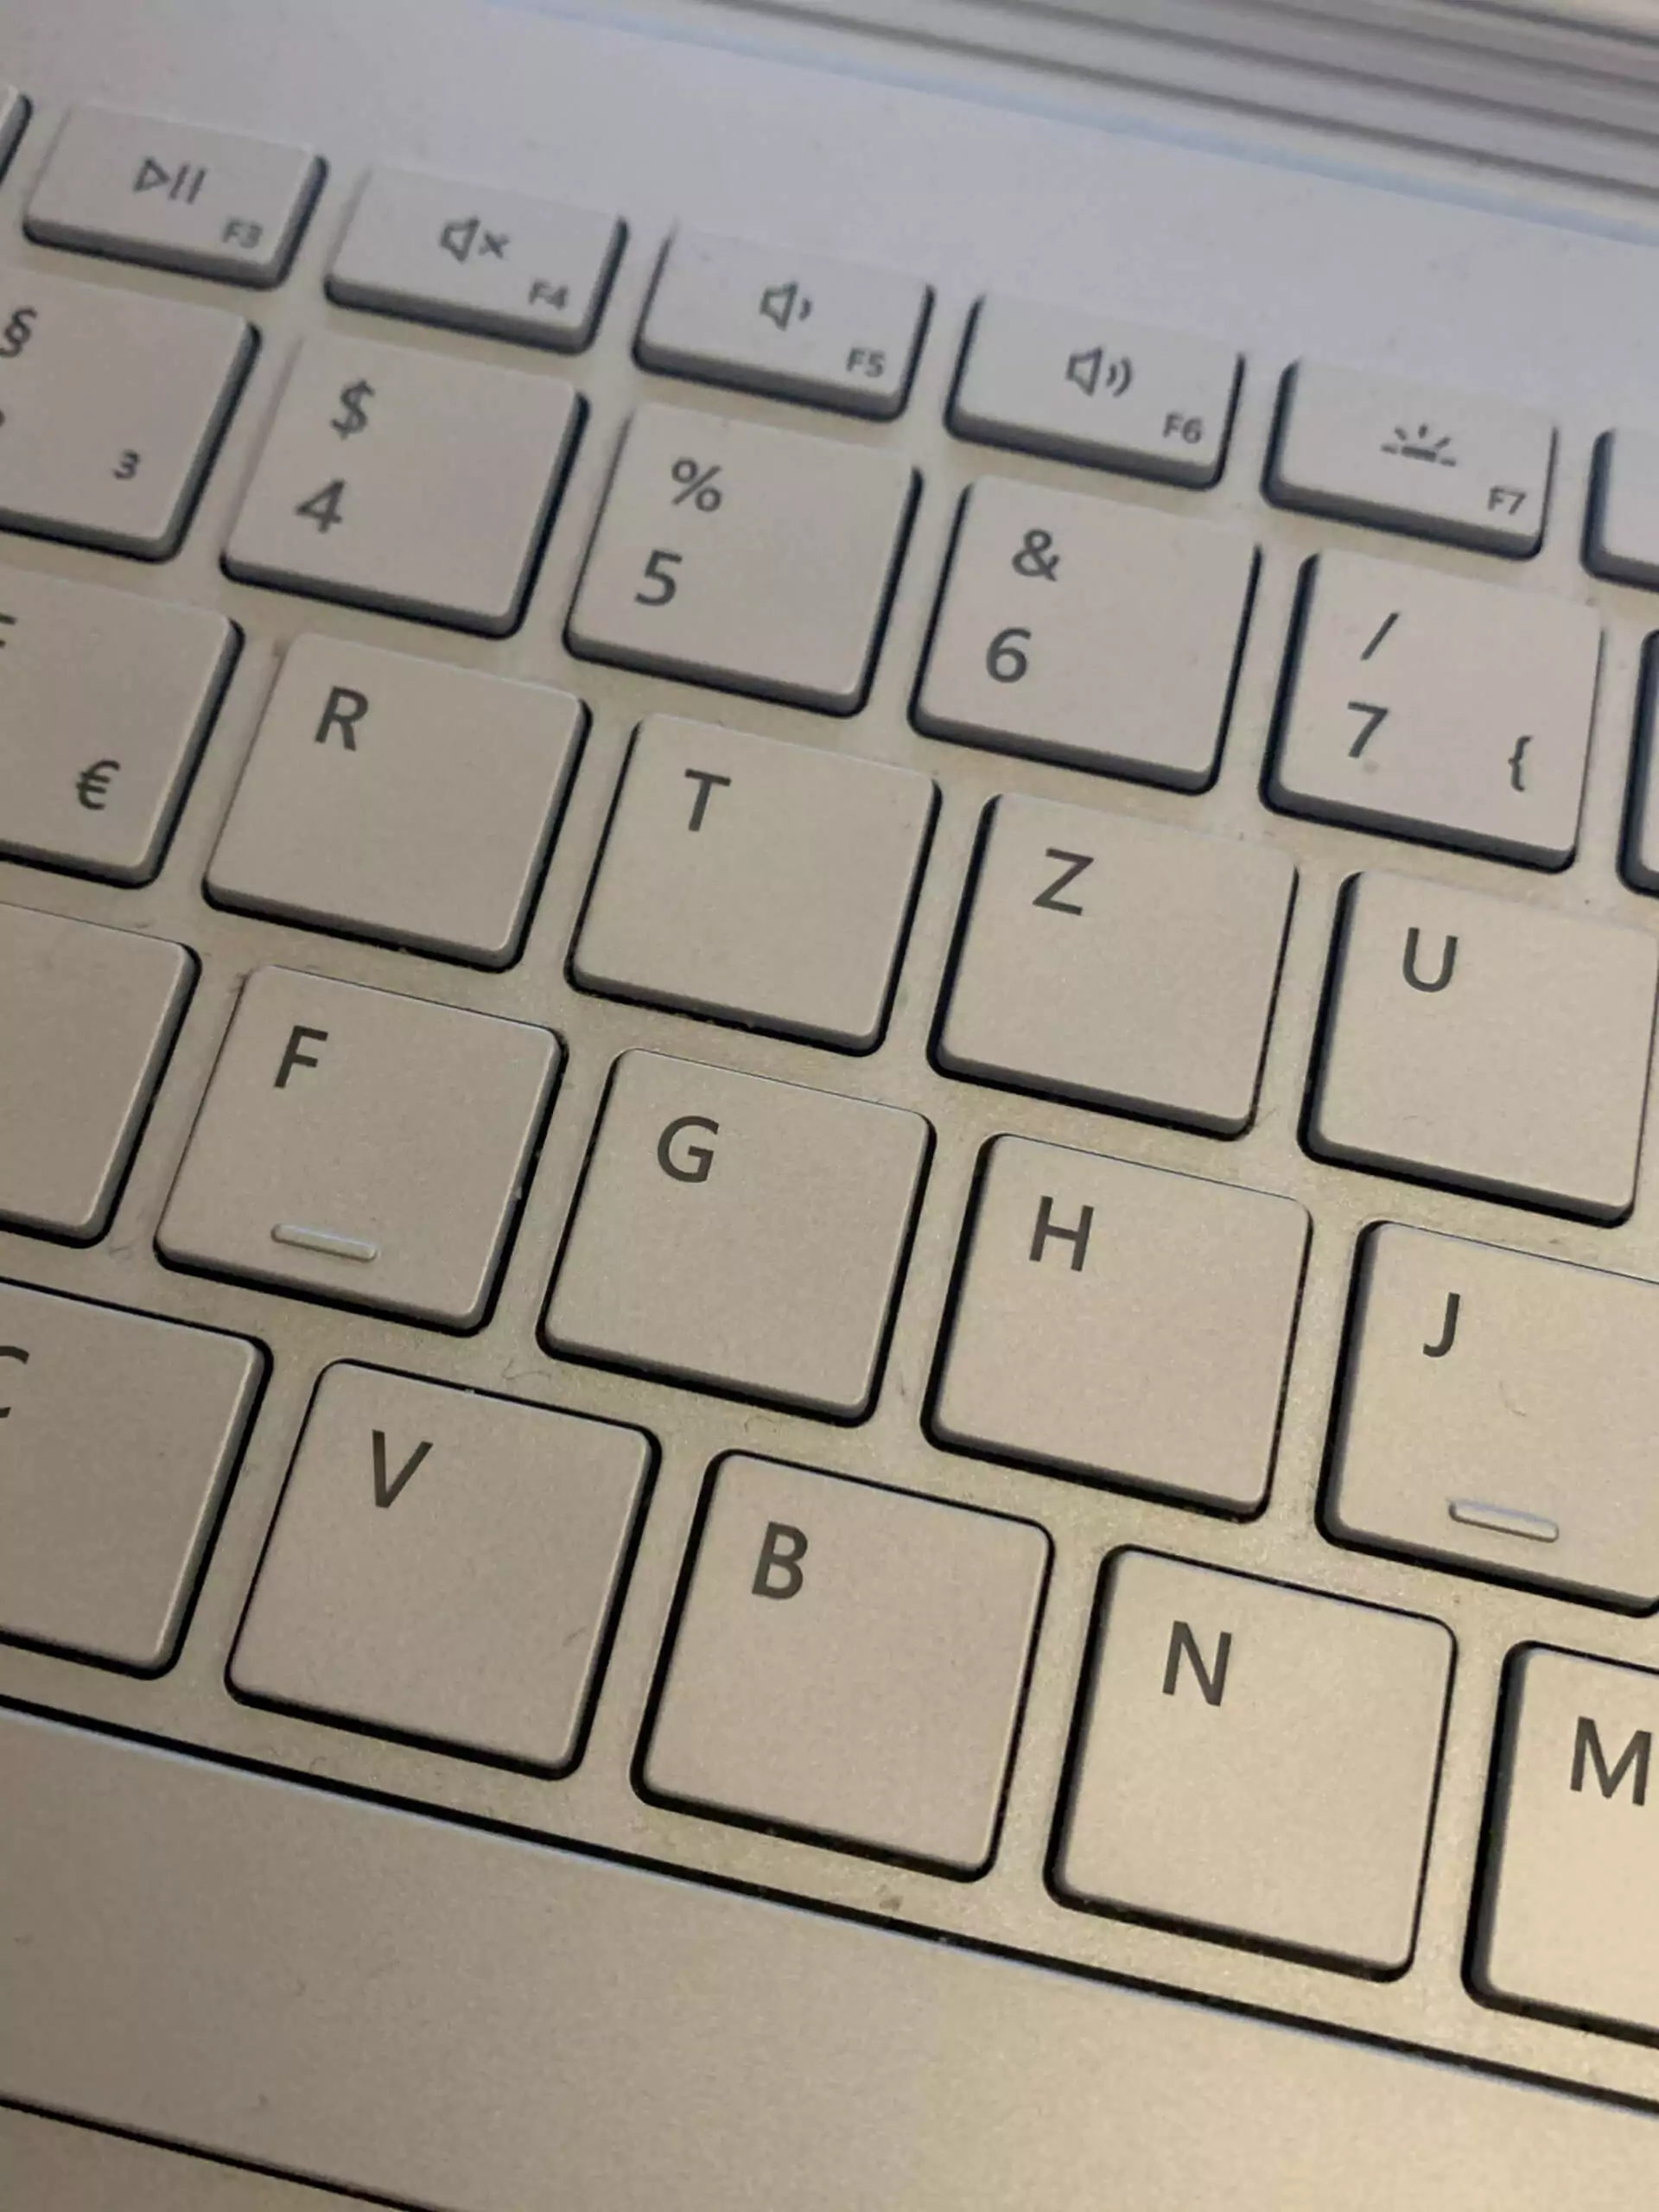 Ausschnitt einer Tastatur